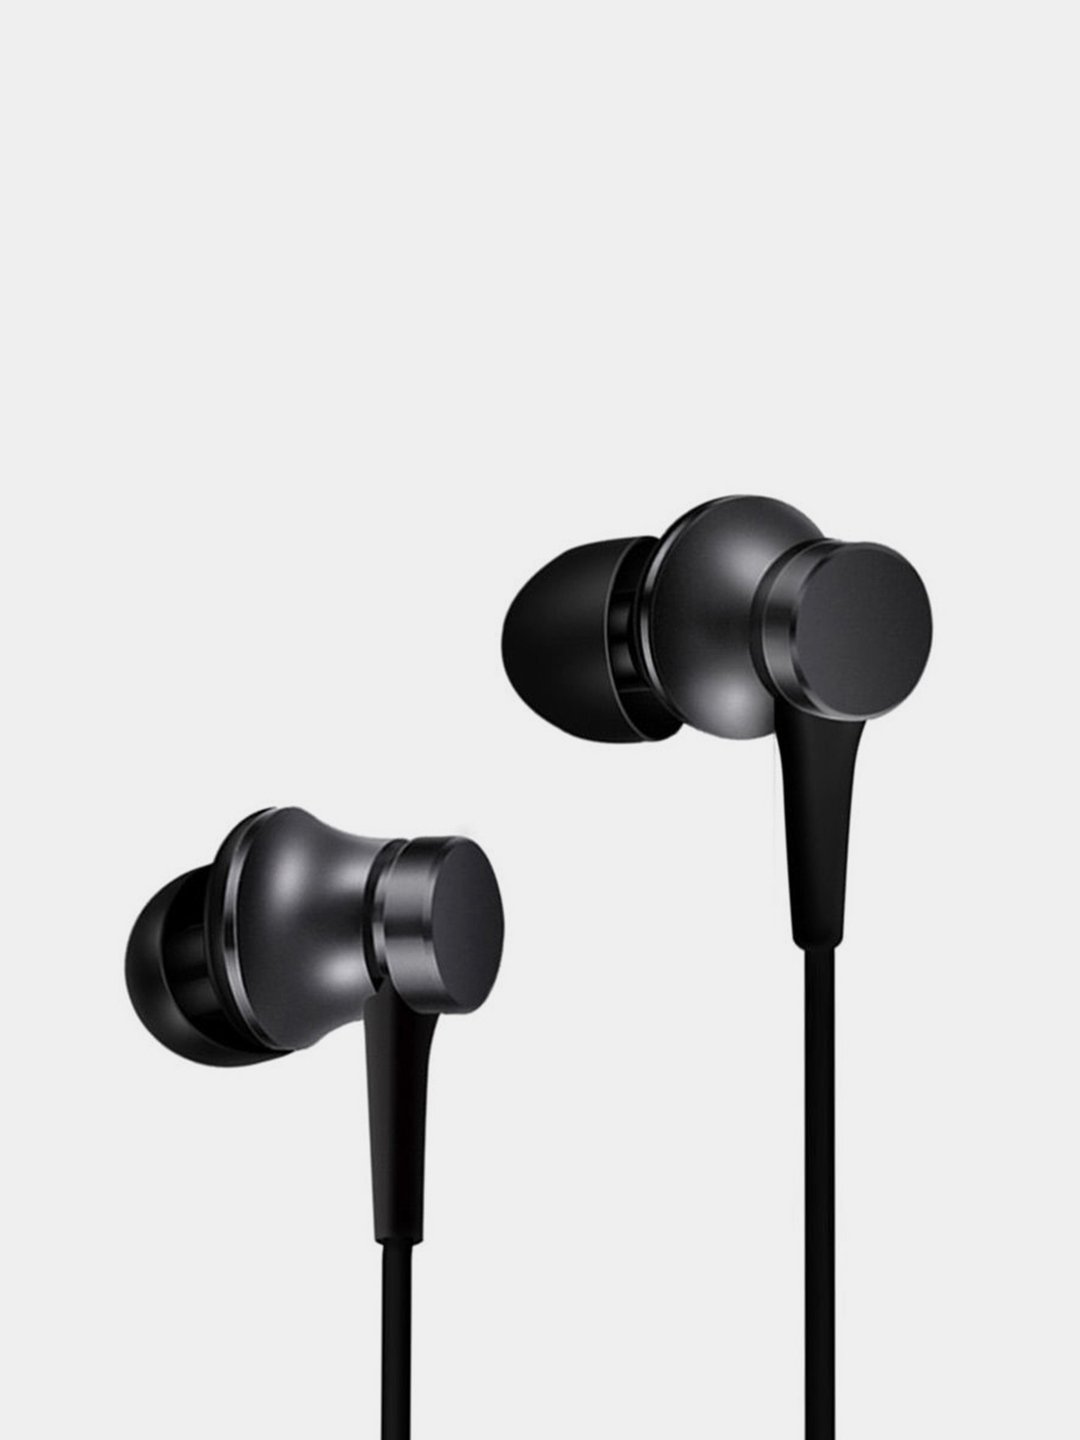 НаушникиXiaomiMiIn-EarHeadphonesBasicсмикрофоном,3.5мм,черный,ZBW4354TYкупитьпоцене1590₽винтернет-магазинеKazanExpress